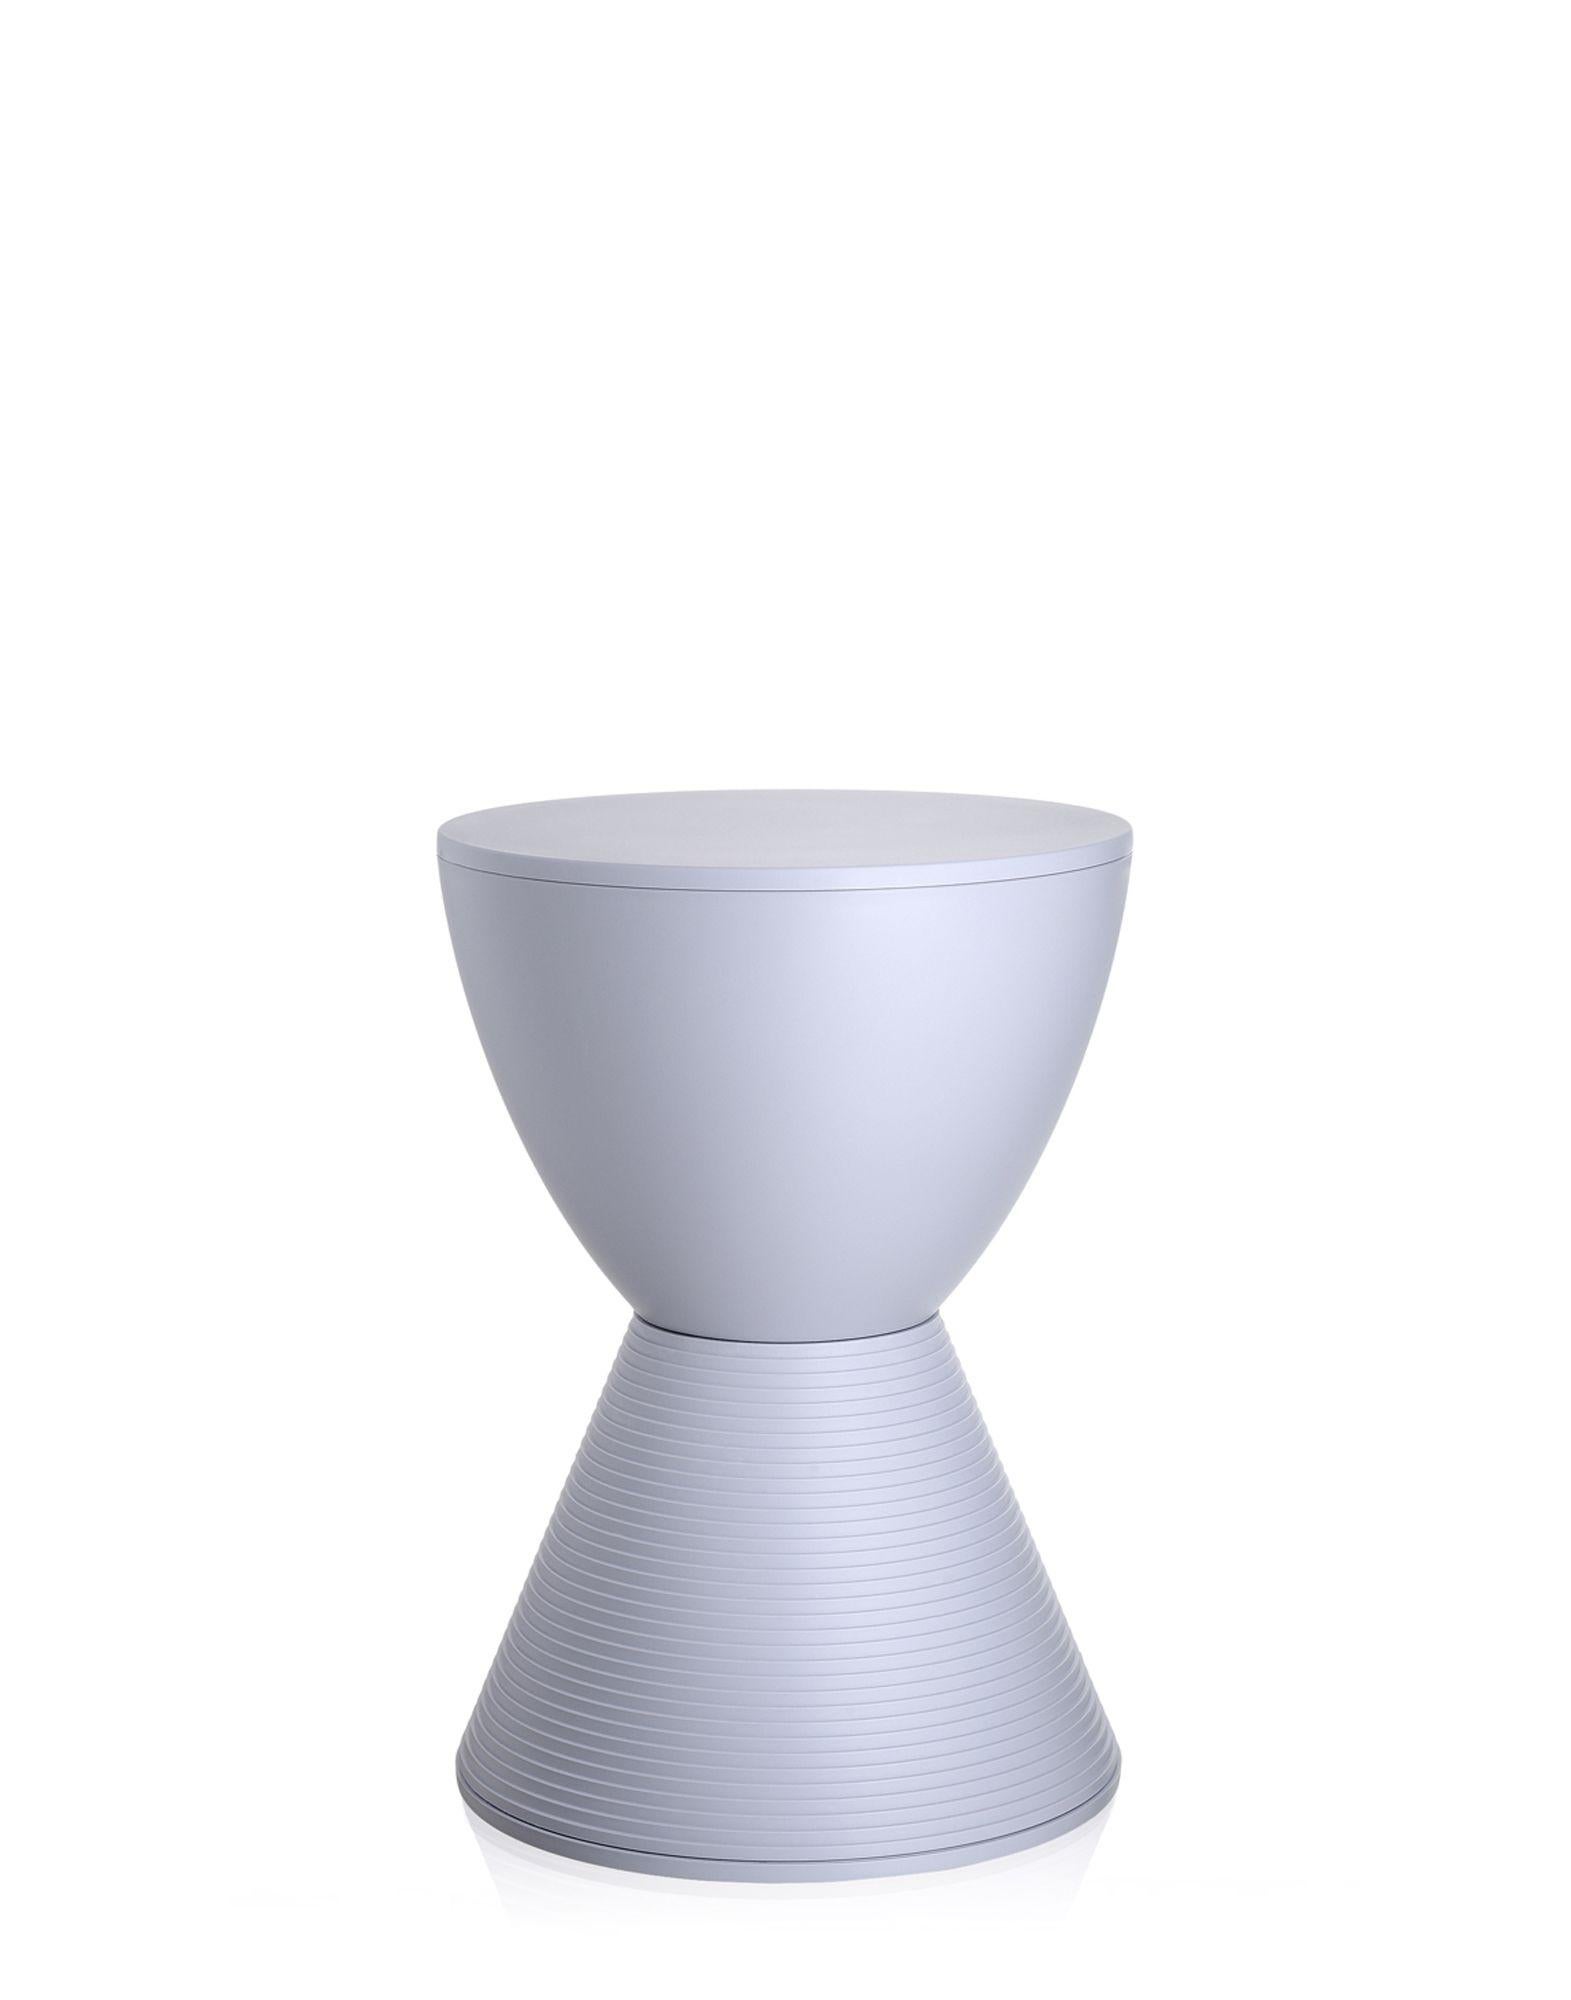 Imaginé comme un jeu de construction coloré, le tabouret Prince Aha est composé de deux cônes pour ressembler à la forme d'un sablier. Un accessoire amusant et coloré, un tabouret pratique et un support à placer à côté du canapé ou du lit. Les